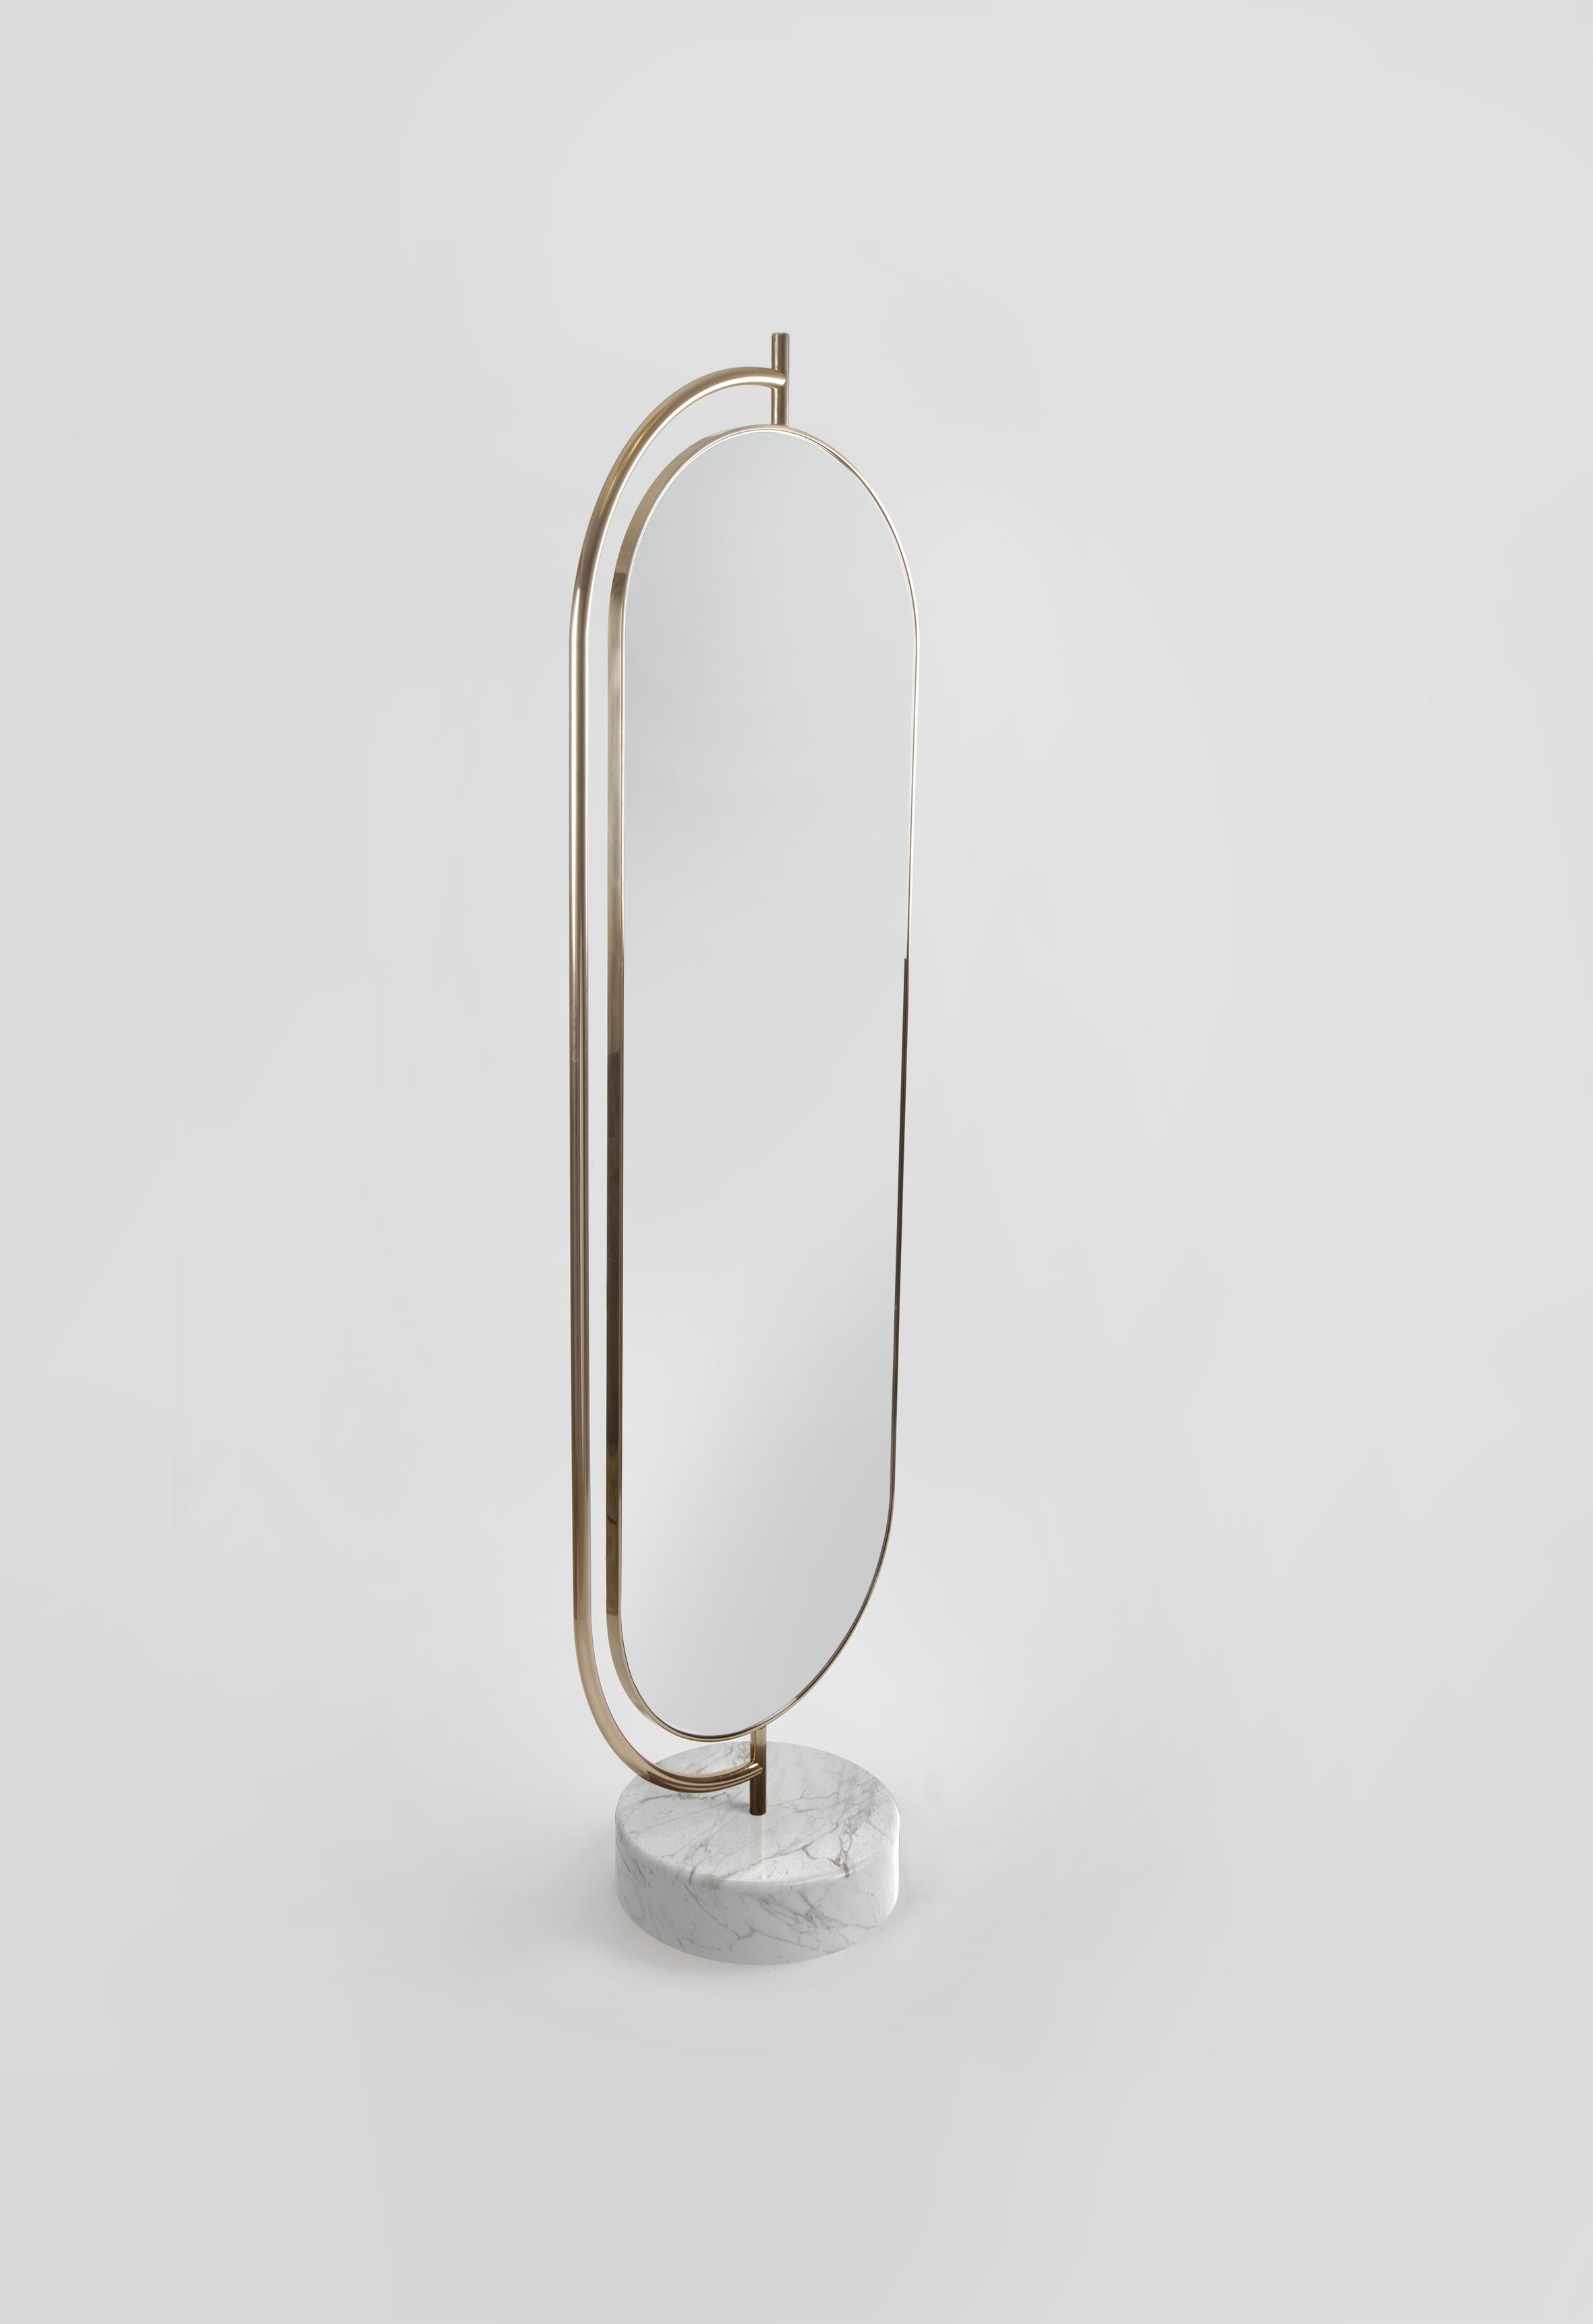 Giove est un miroir pleine longueur soutenu par une base en marbre poli avec une élégante structure métallique. Le dos du miroir peut être recouvert d'un certain nombre de tissus différents. Giove peut tourner à l'intérieur du cadre métallique,